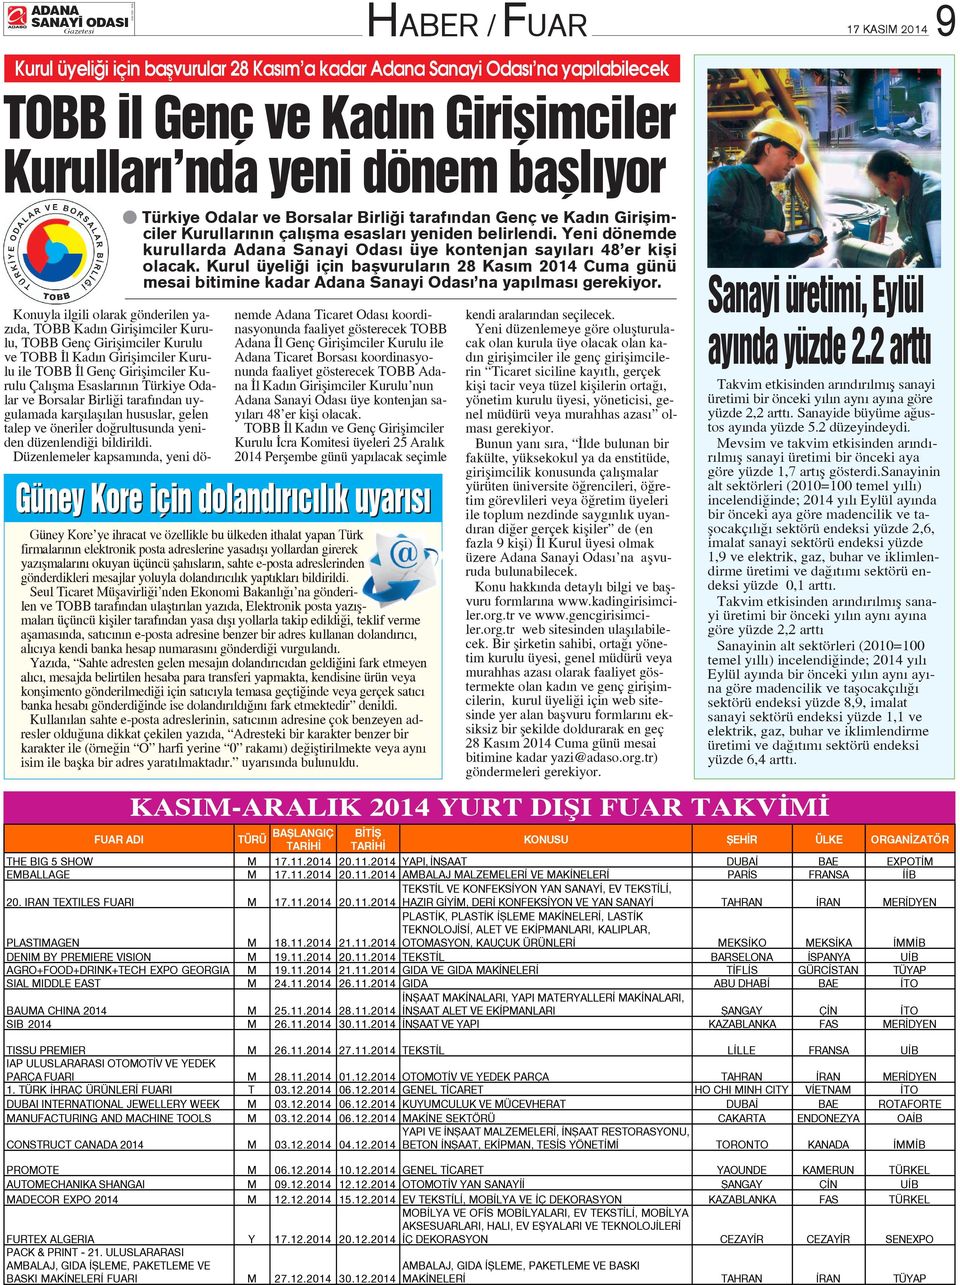 Kurul üyeli i için baflvurular n 28 Kas m 2014 Cuma günü mesai bitimine kadar Adana Sanayi Odas na yap lmas gerekiyor.